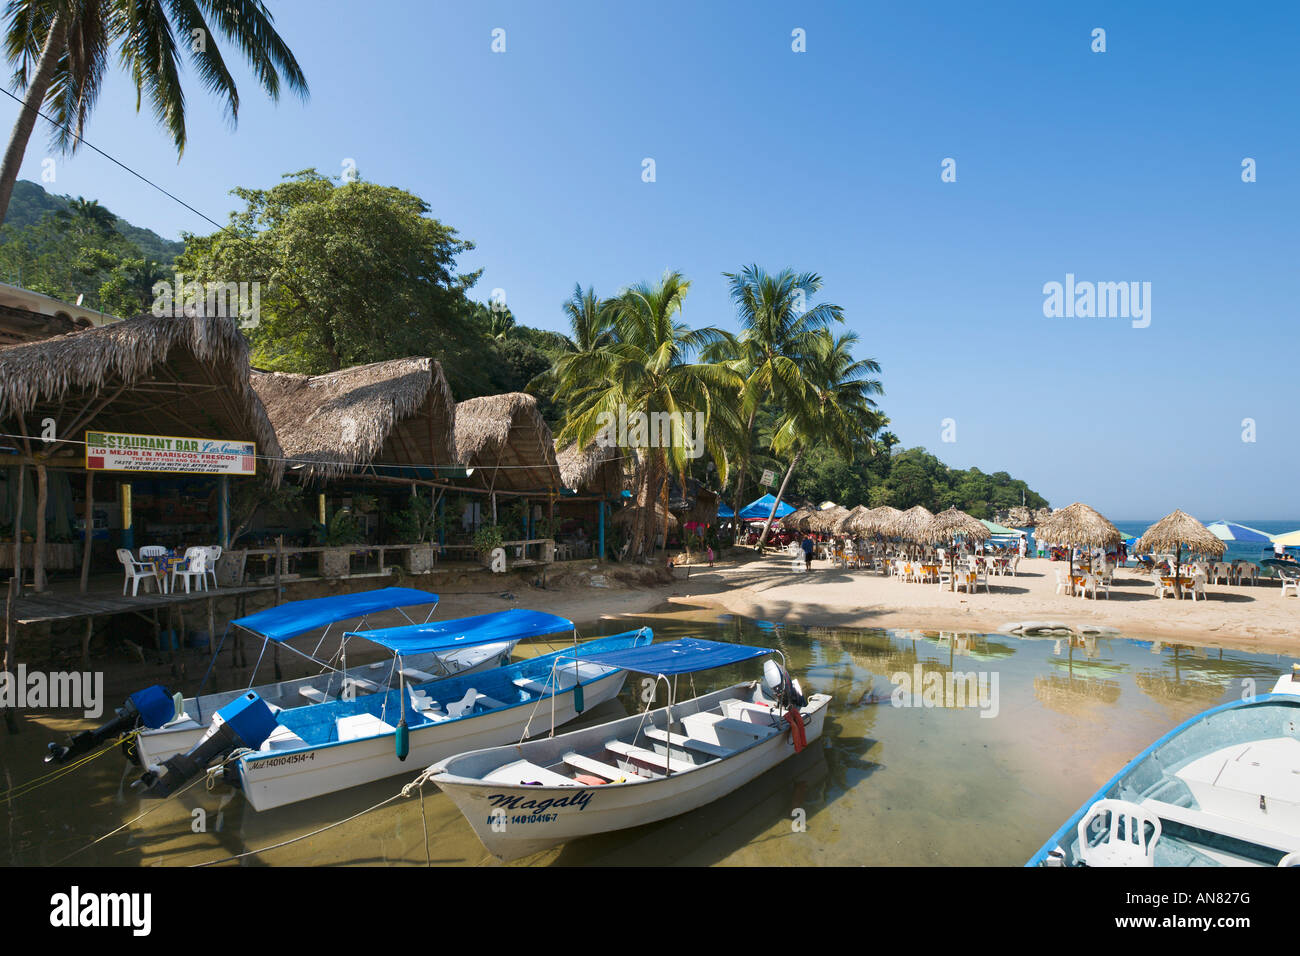 Beachfront Restaurant and Boats on Mismaloya River, Mismaloya, Puerto Vallarta, Jalisco, Pacific Coast, Mexico Stock Photo